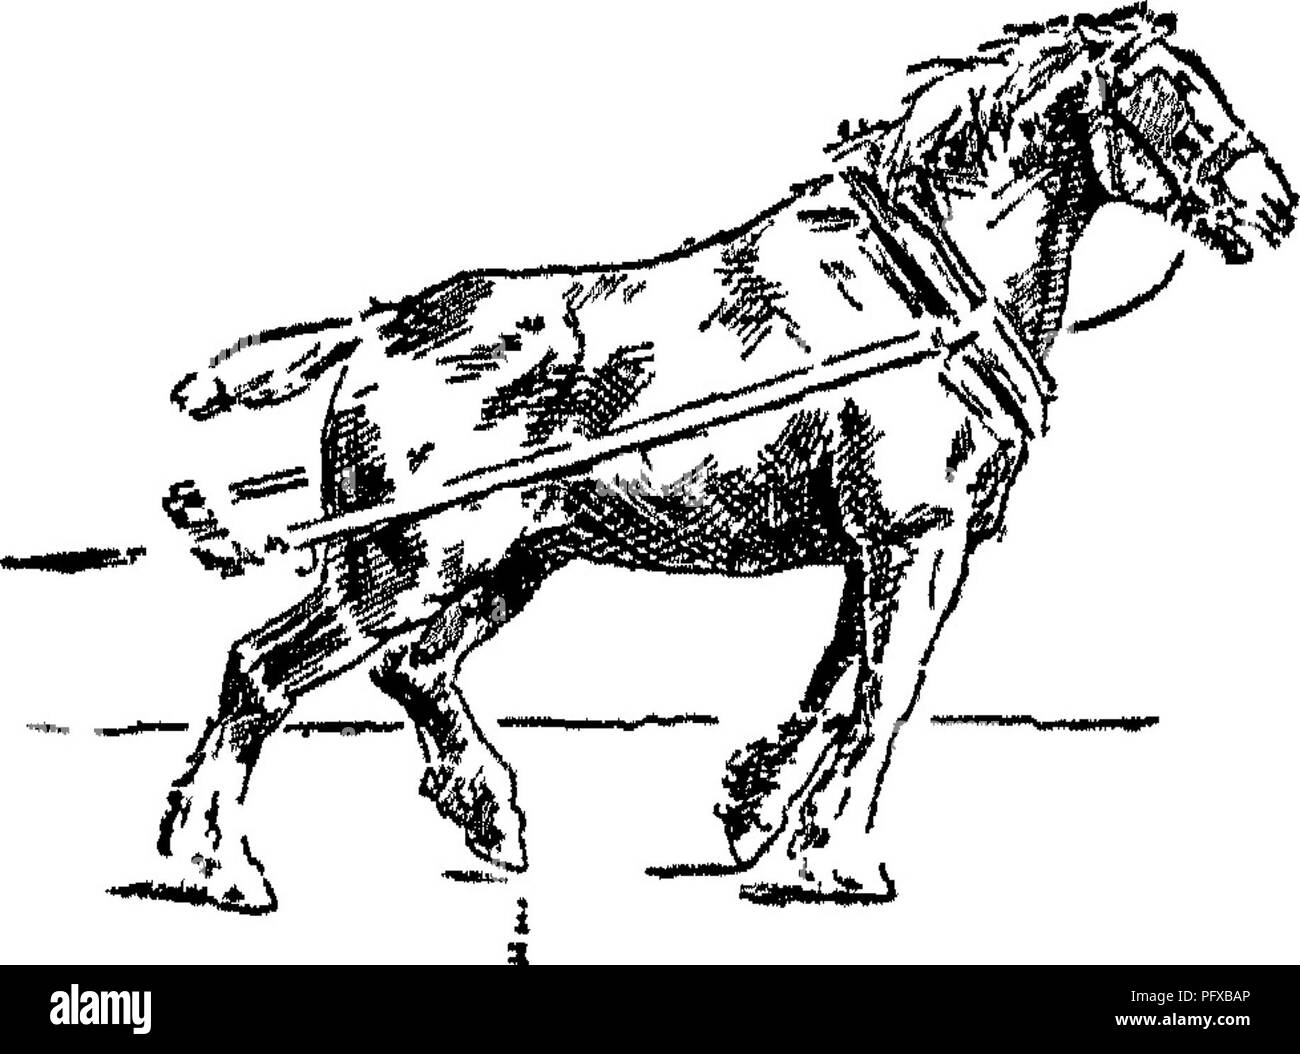 . Punkte des Pferdes; eine Abhandlung über den Körperbau, Bewegungen, Rassen und Evolution des Pferdes. Pferde. Fia 93. Abb. 94. Bitte beachten Sie, dass diese Bilder sind von der gescannten Seite Bilder, die digital für die Lesbarkeit verbessert haben mögen - Färbung und Aussehen dieser Abbildungen können nicht perfekt dem Original ähneln. extrahiert. Hayes, M. Horace (Matthäus Horace), 1842-1904. London, W. Thacker &Amp; Co Stockfoto